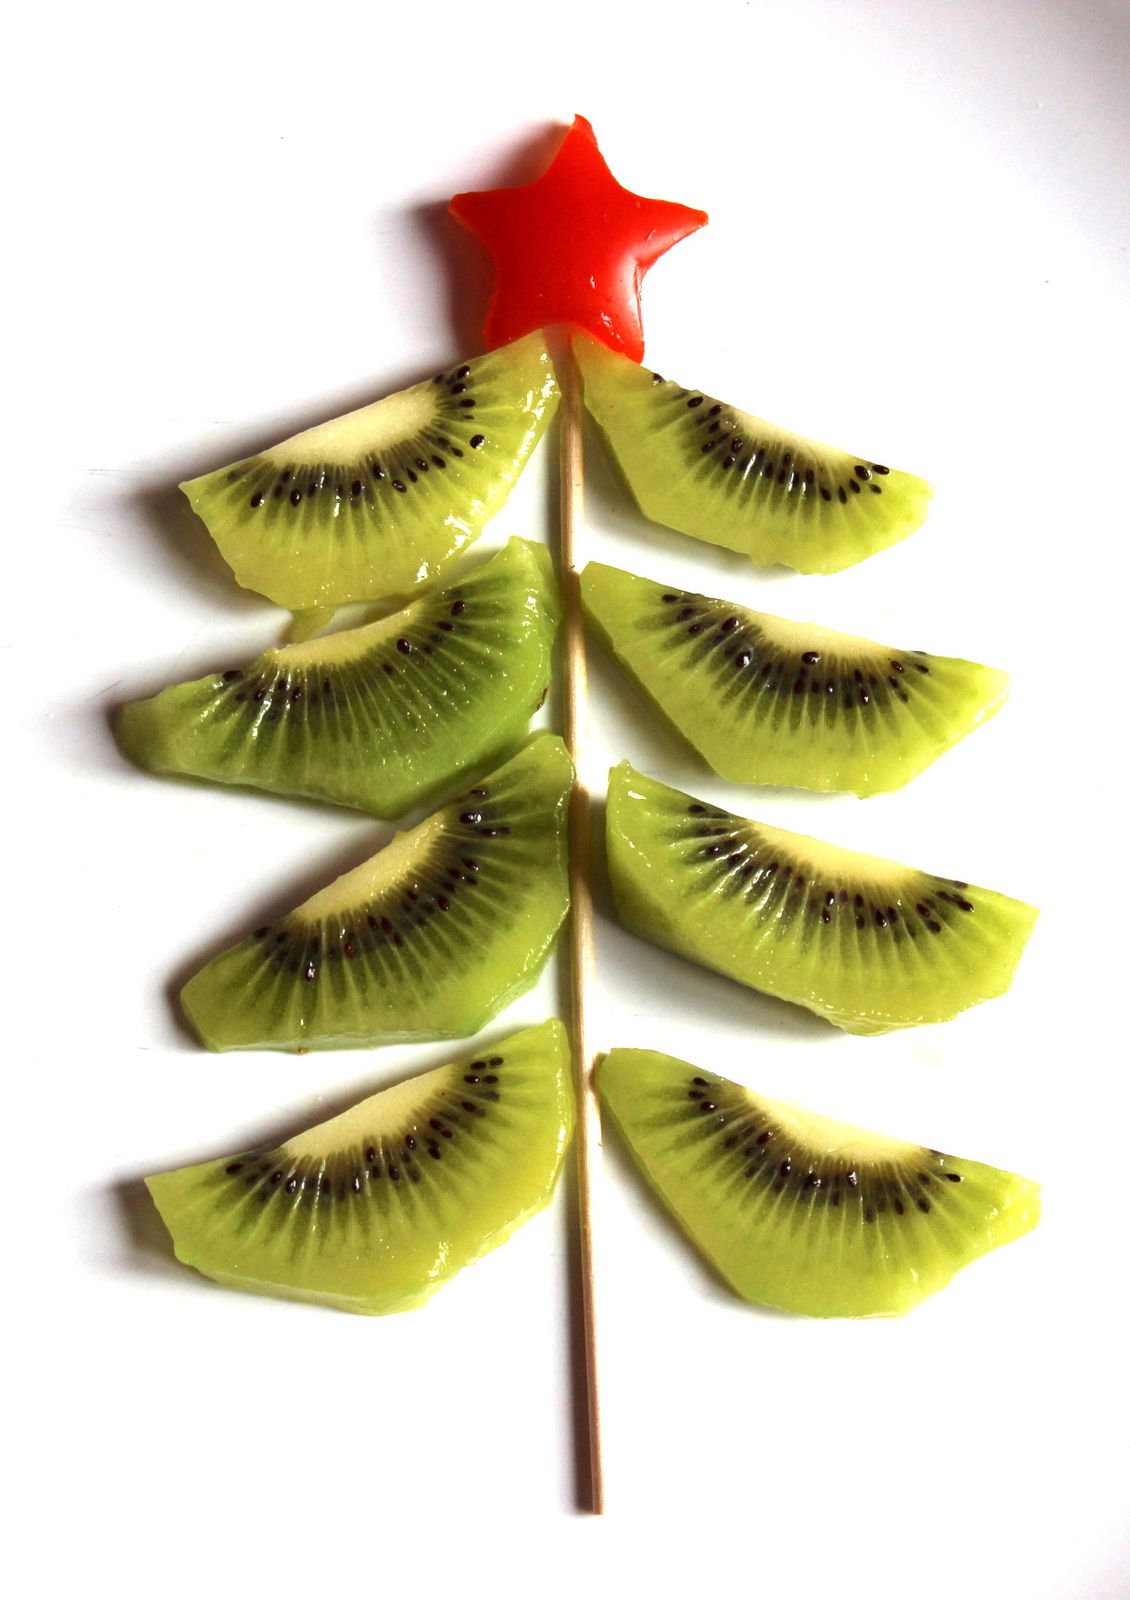 Sapin en kiwi - L'étoile est un bout de tomate découpé avec un emporte-pièce.